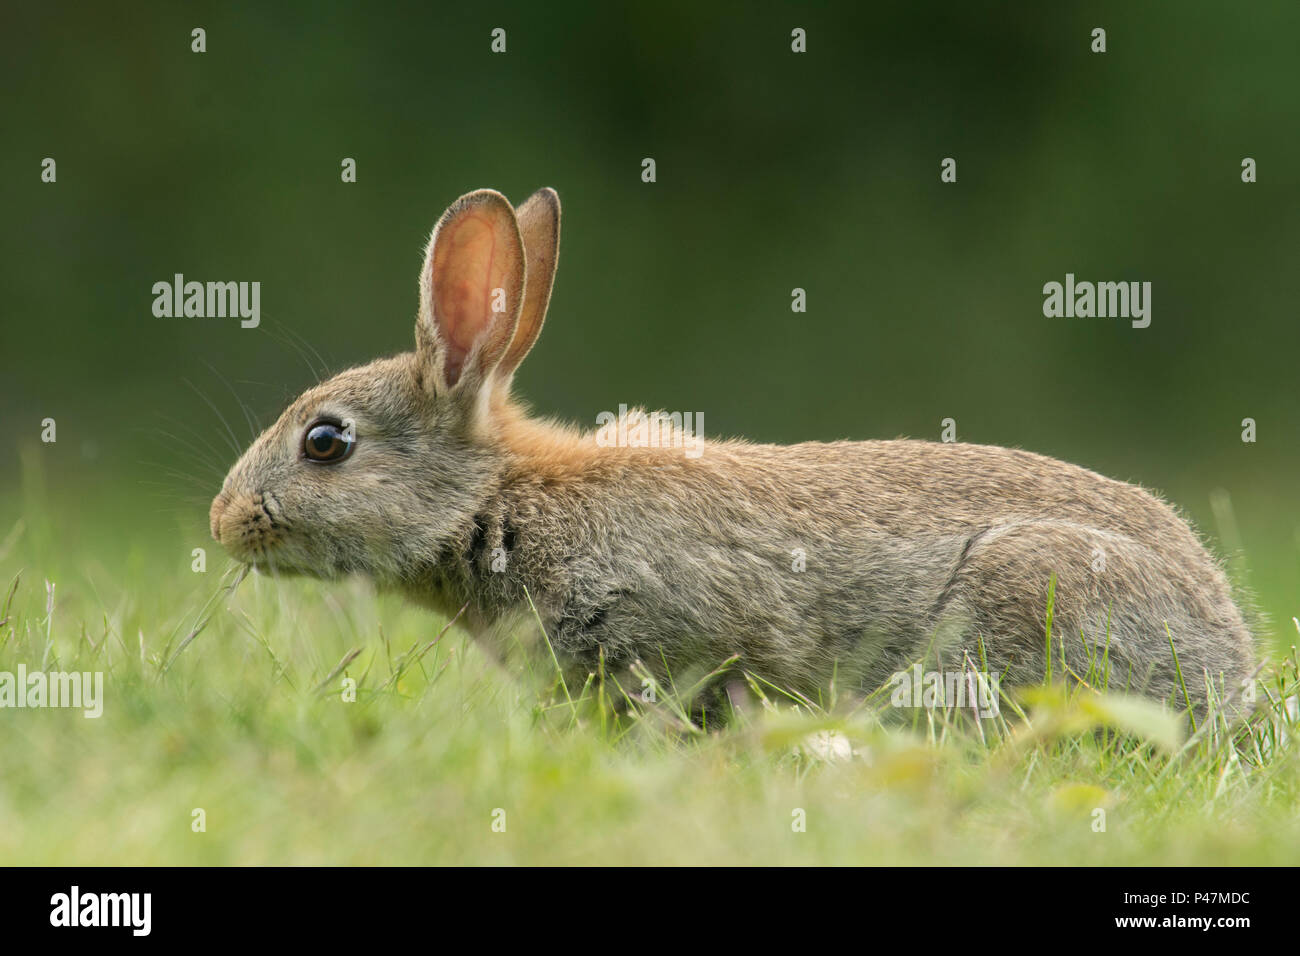 Europäische Kaninchen, Oryctolagus cuniculus, junge Kaninchen füttern im Gras, Mai, Norfolk, Großbritannien, Stockfoto